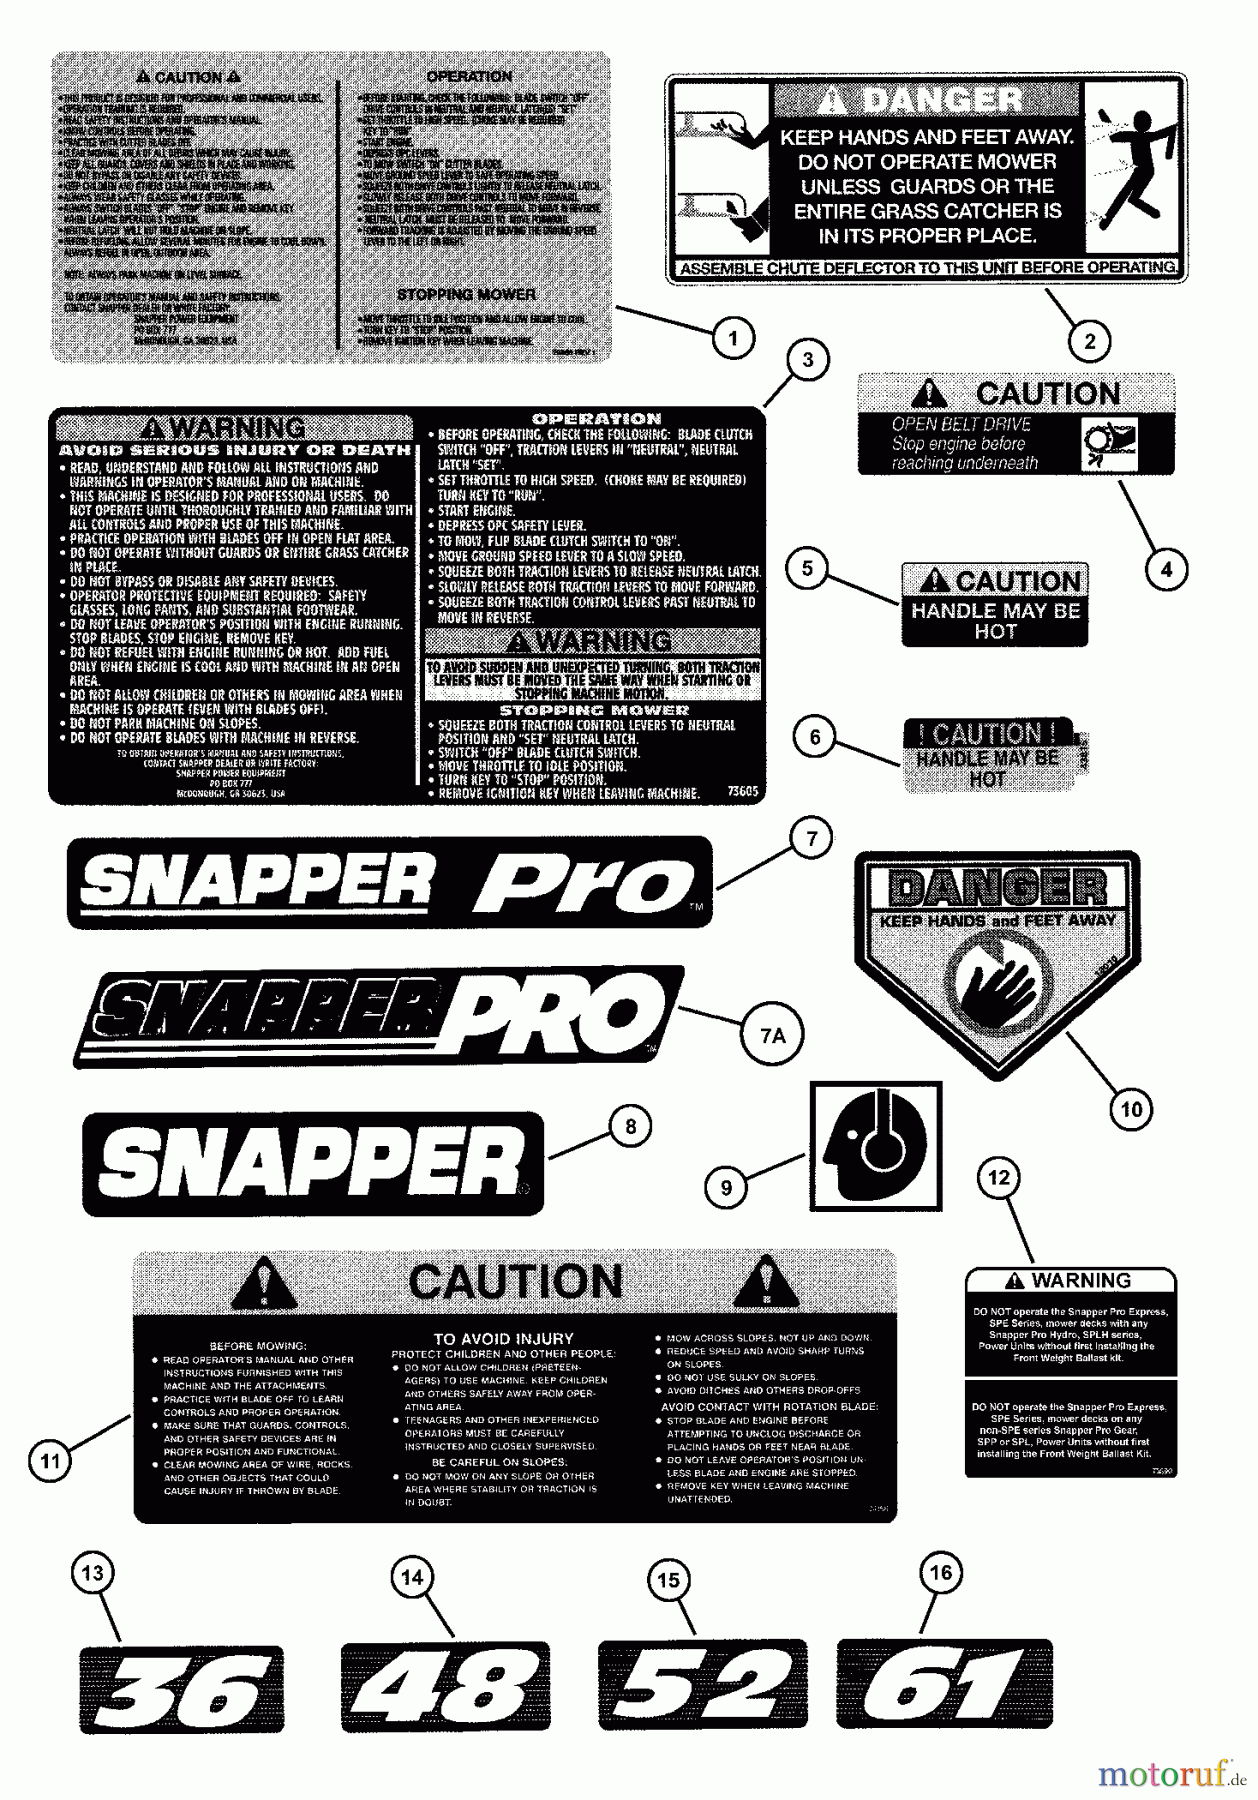  Snapper Mähdecks SPA360 - Snapper 36